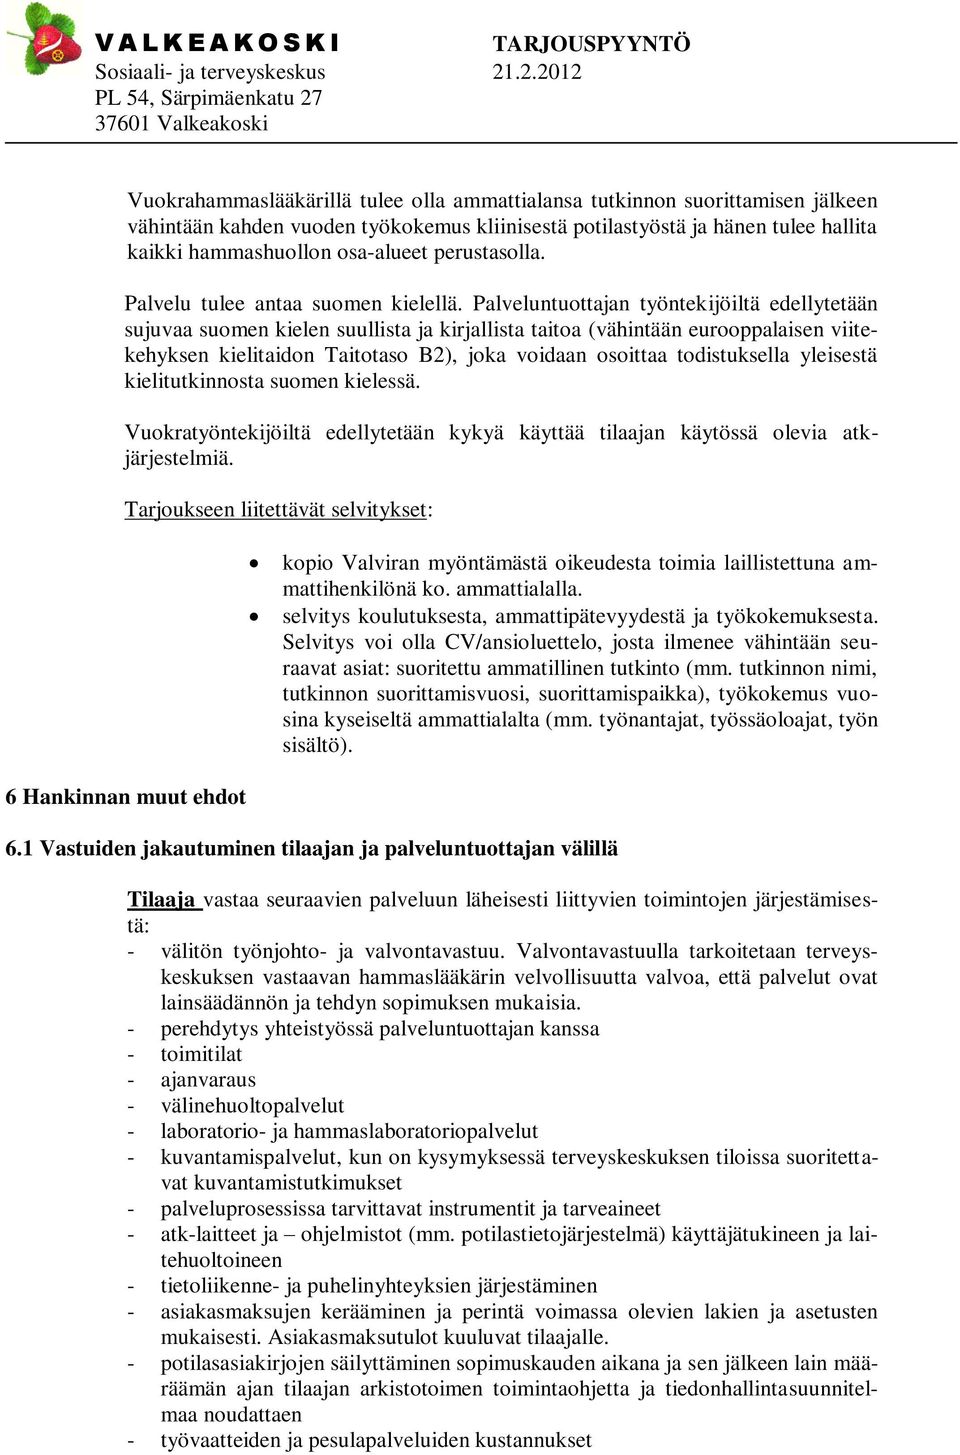 Palveluntuottajan työntekijöiltä edellytetään sujuvaa suomen kielen suullista ja kirjallista taitoa (vähintään eurooppalaisen viitekehyksen kielitaidon Taitotaso B2), joka voidaan osoittaa